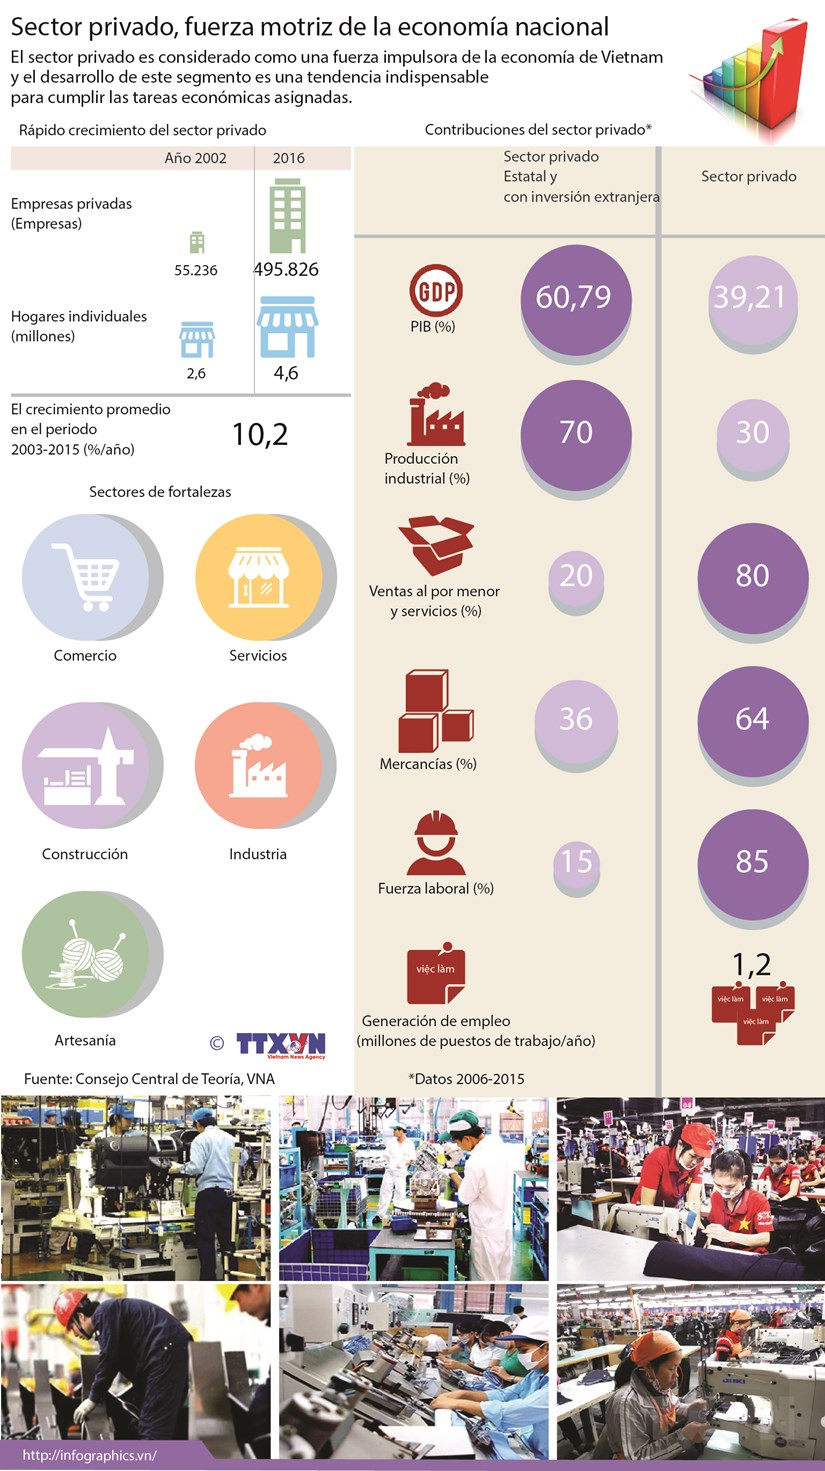 [Infografia] Sector privado, fuerza motriz de la economia nacional hinh anh 1